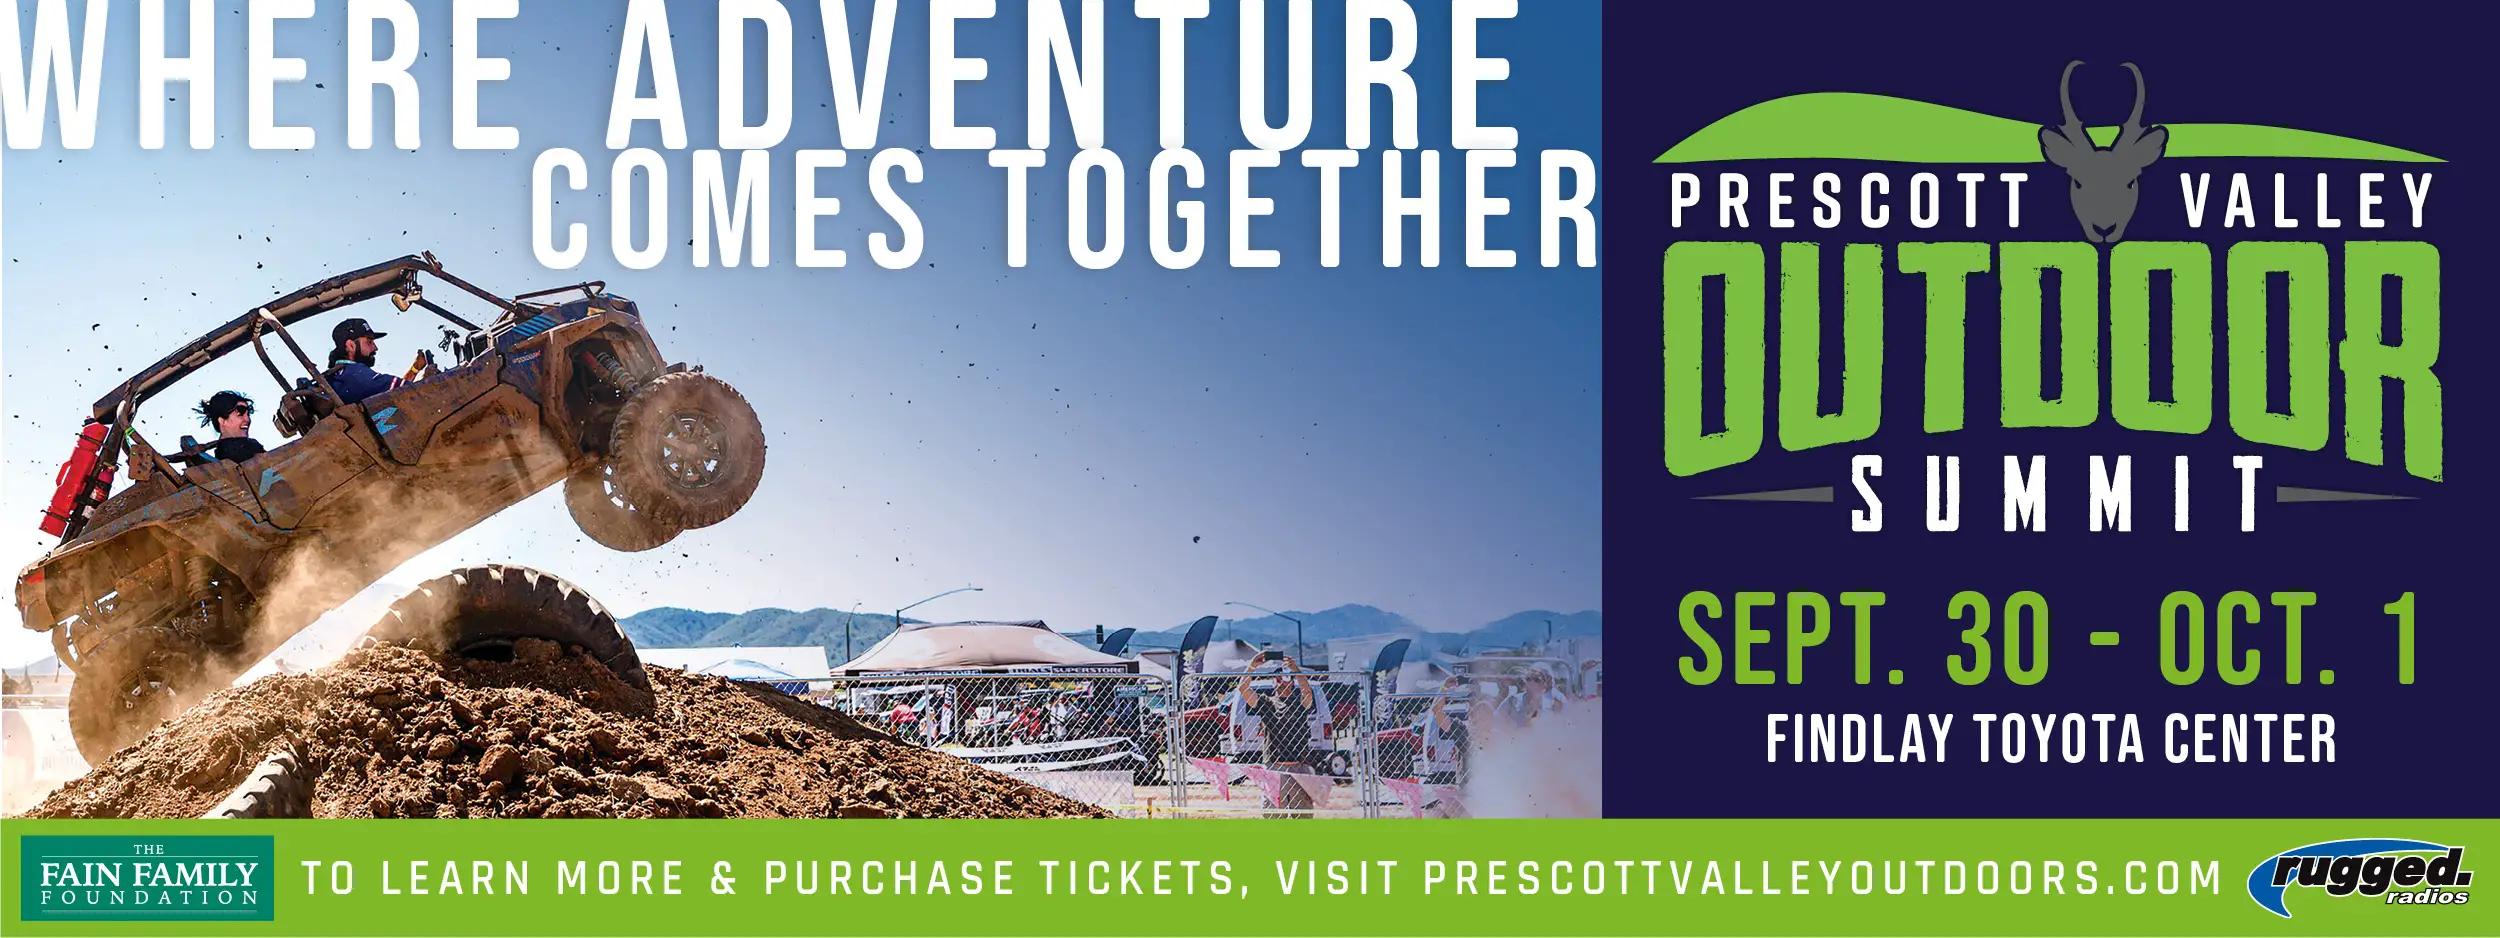 Prescott Valley Outdoor Summit Top banner ad